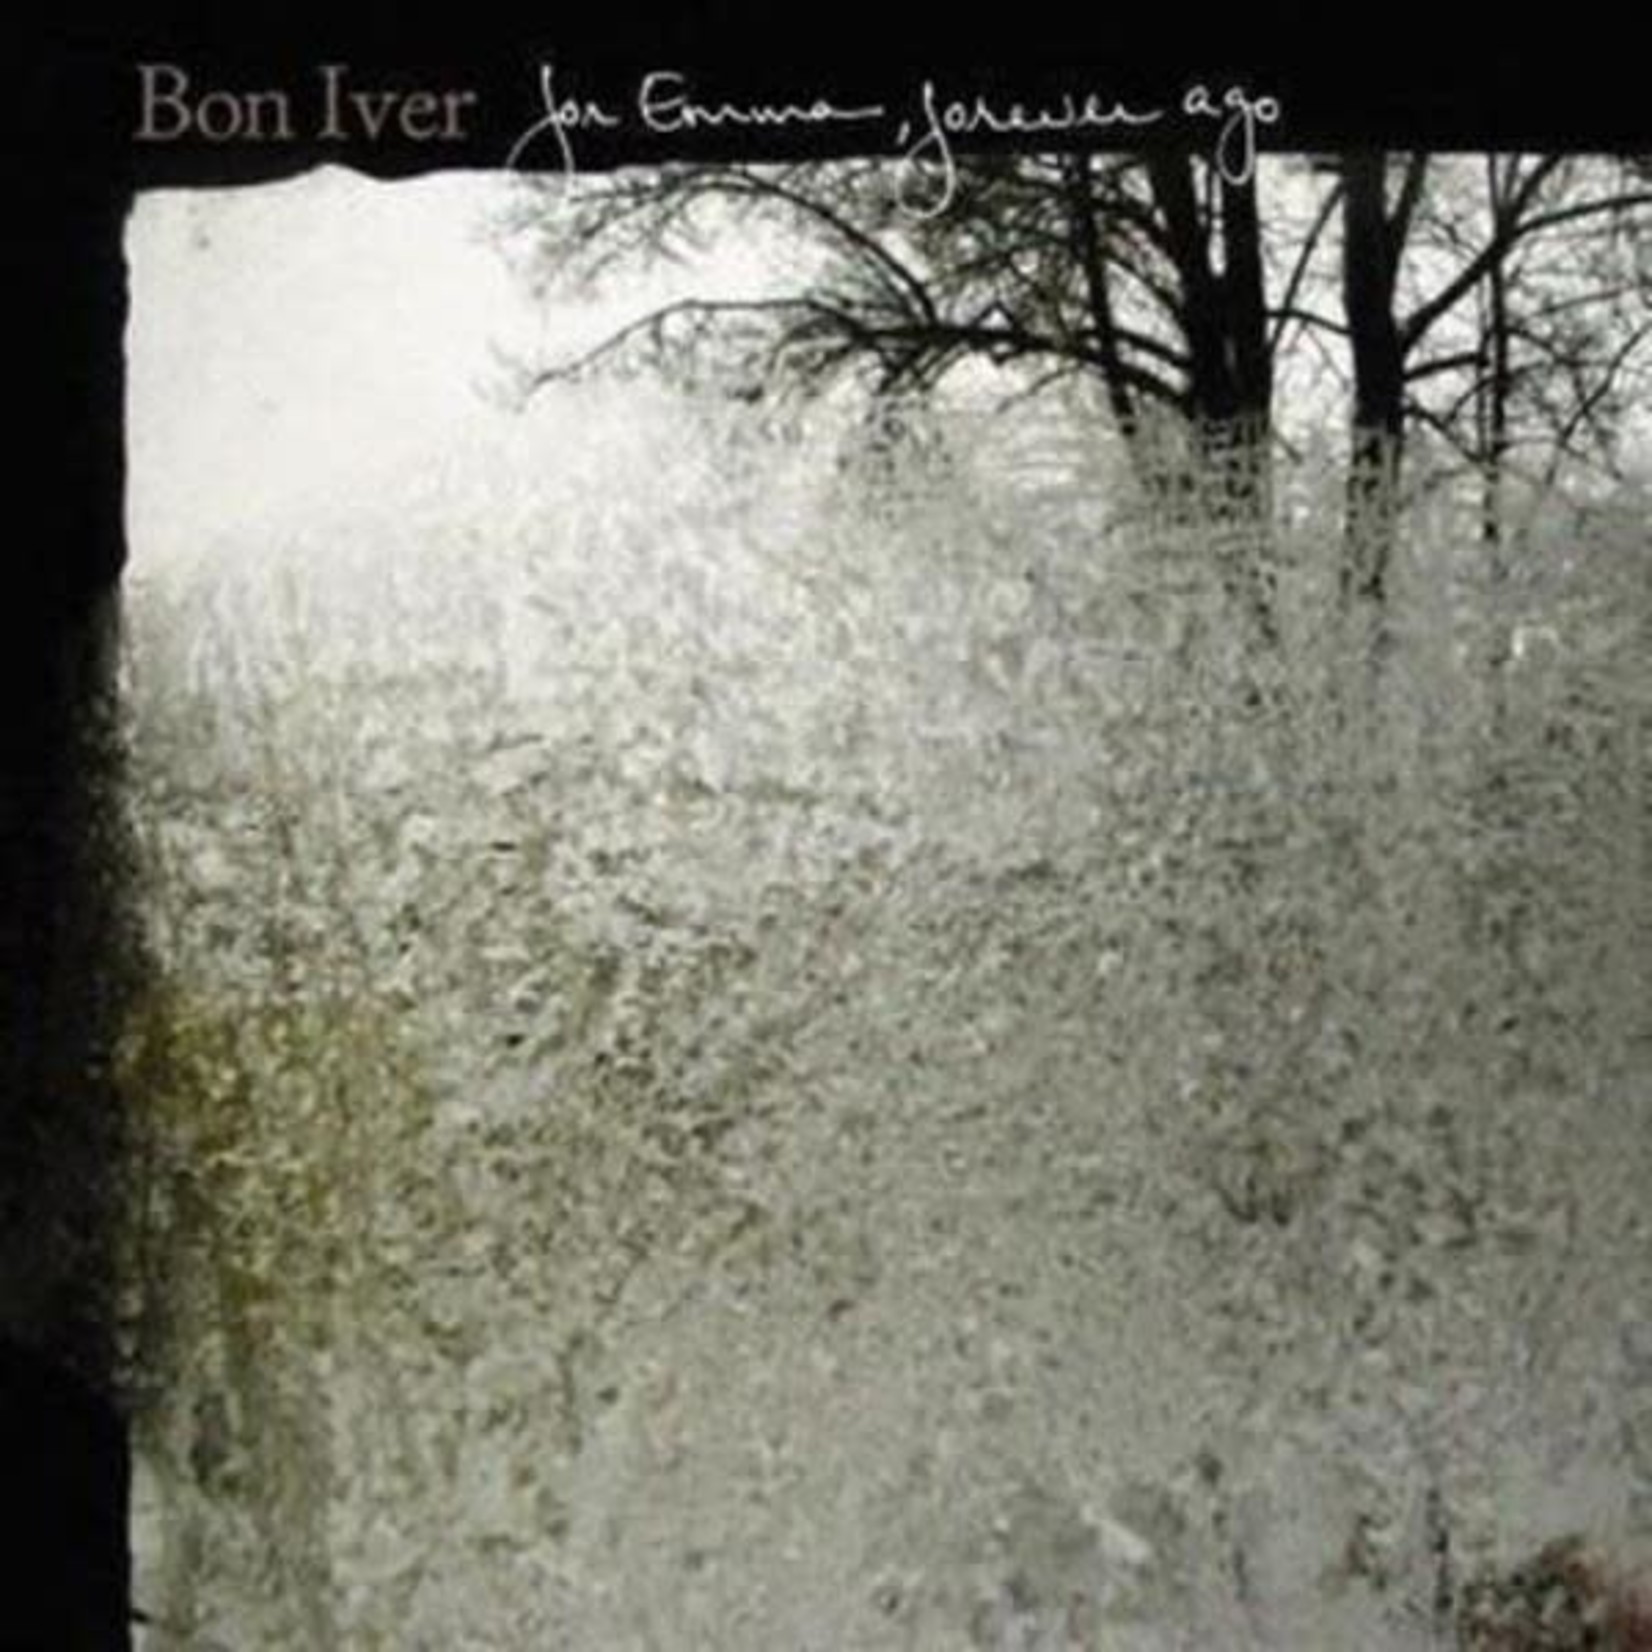 Jagjaguwar Bon Iver - For Emma, Forever Ago (LP)